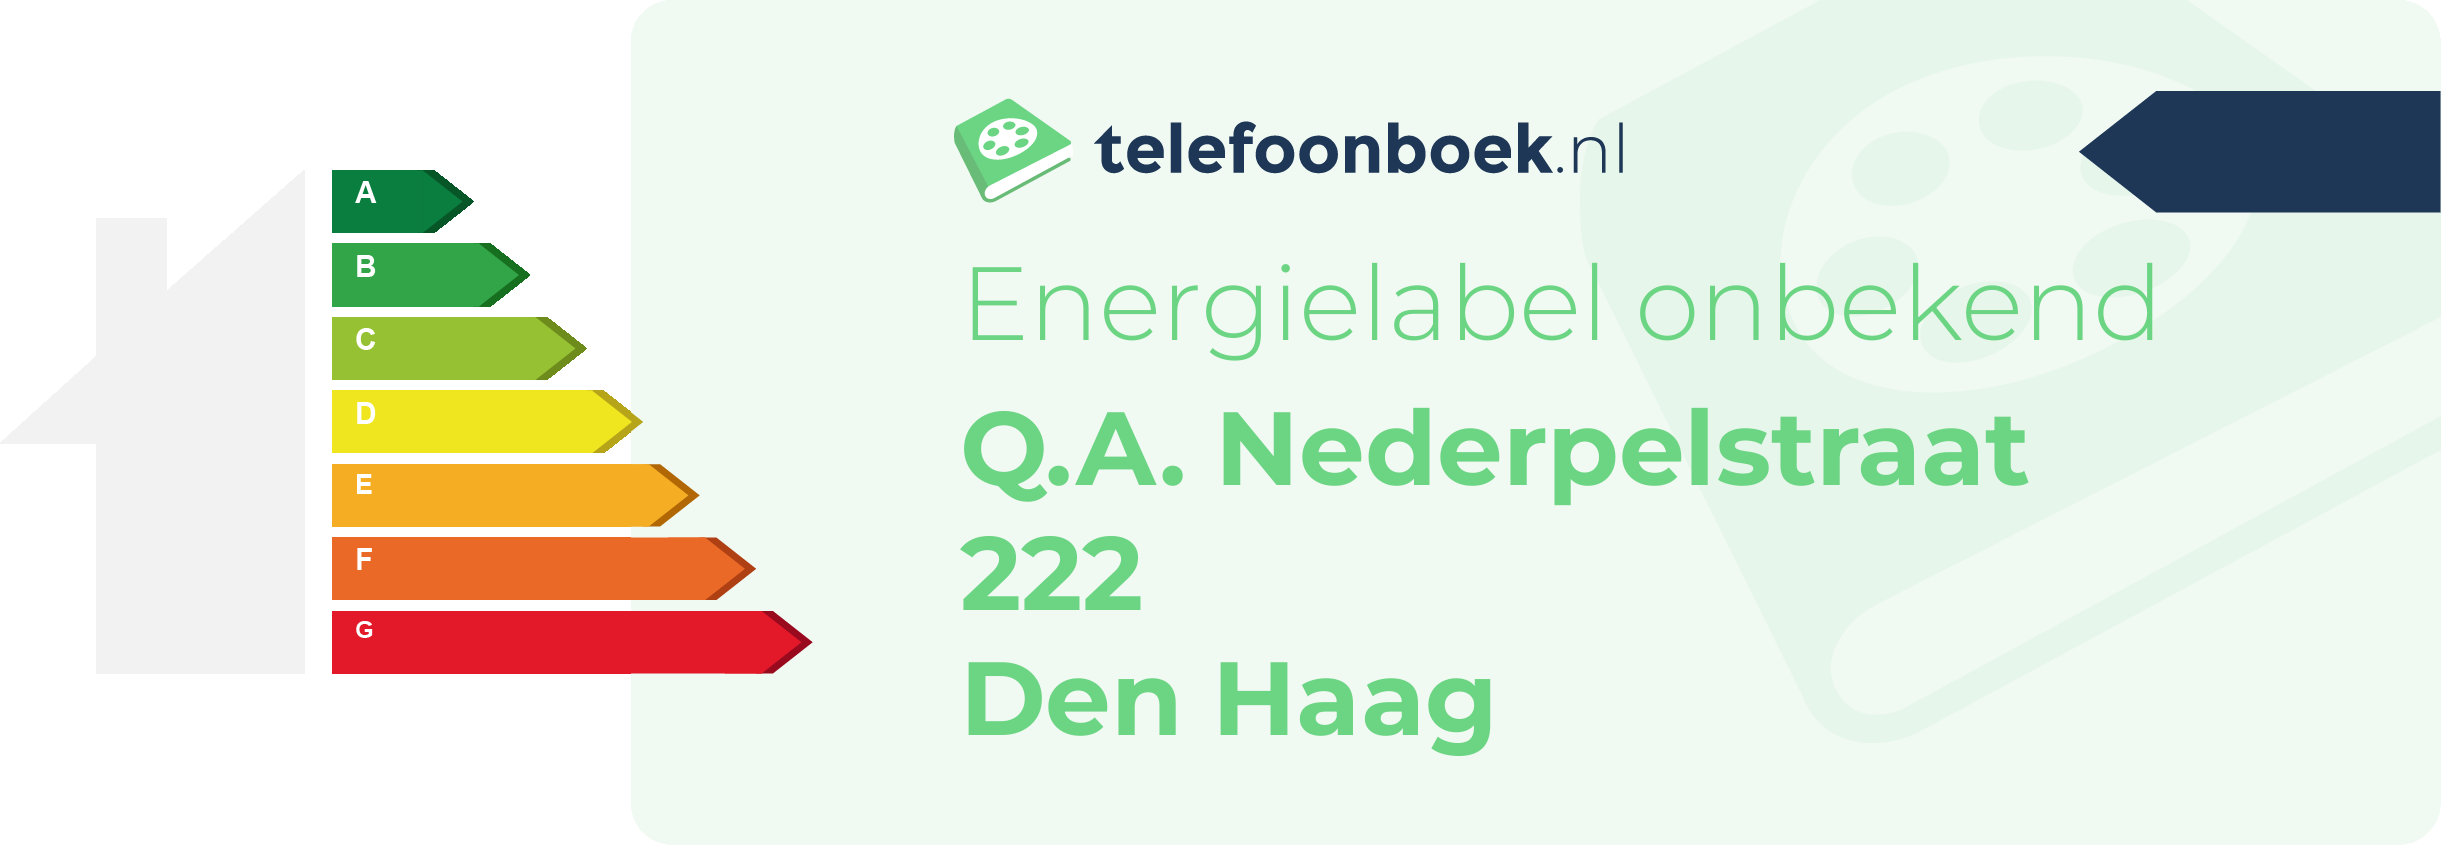 Energielabel Q.A. Nederpelstraat 222 Den Haag